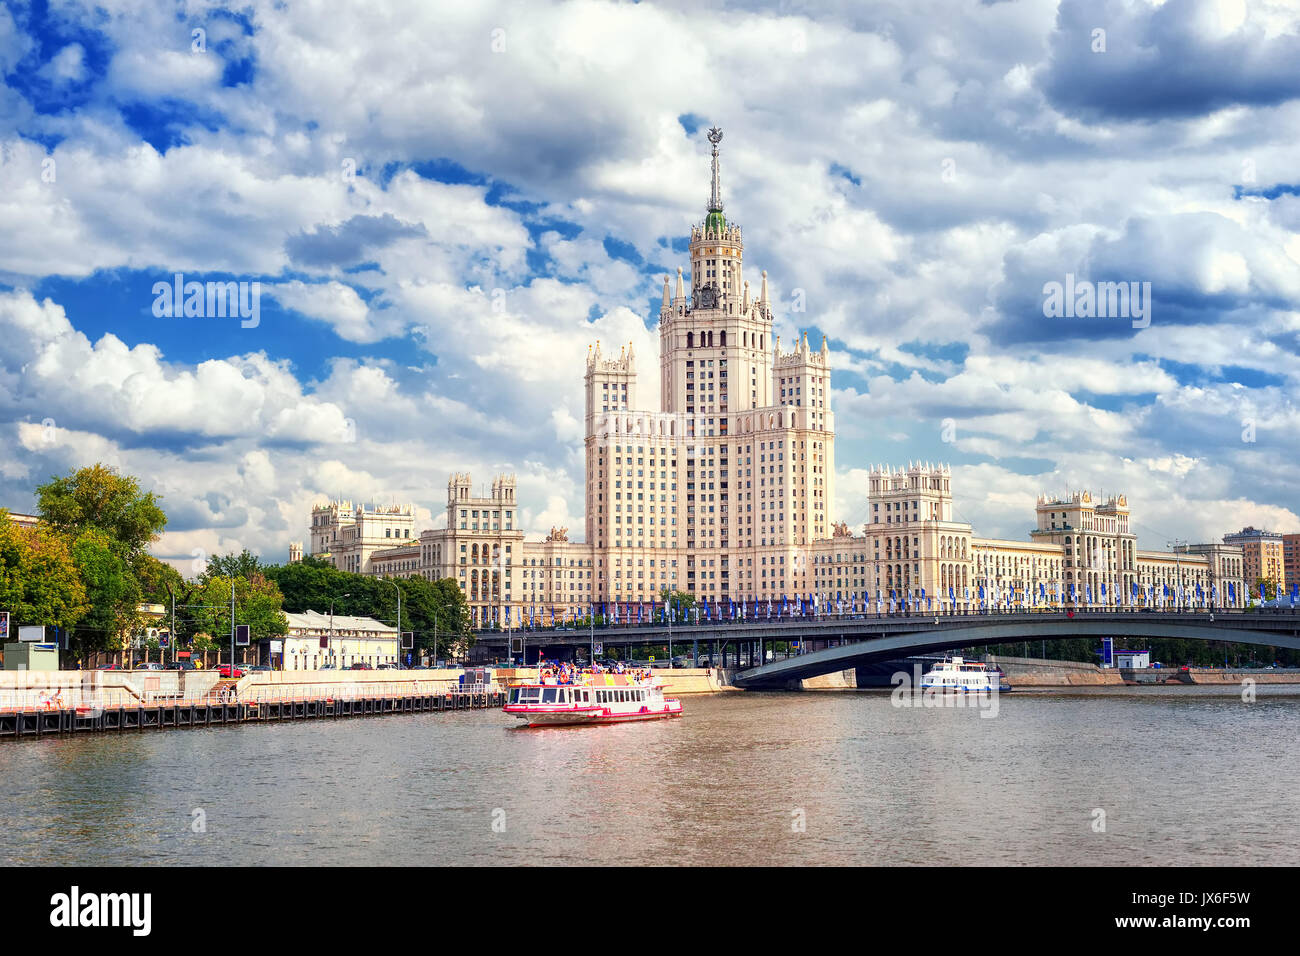 Mosca, Russia, la torre di un grattacielo stalinista rivolta verso il fiume Moskva Foto Stock